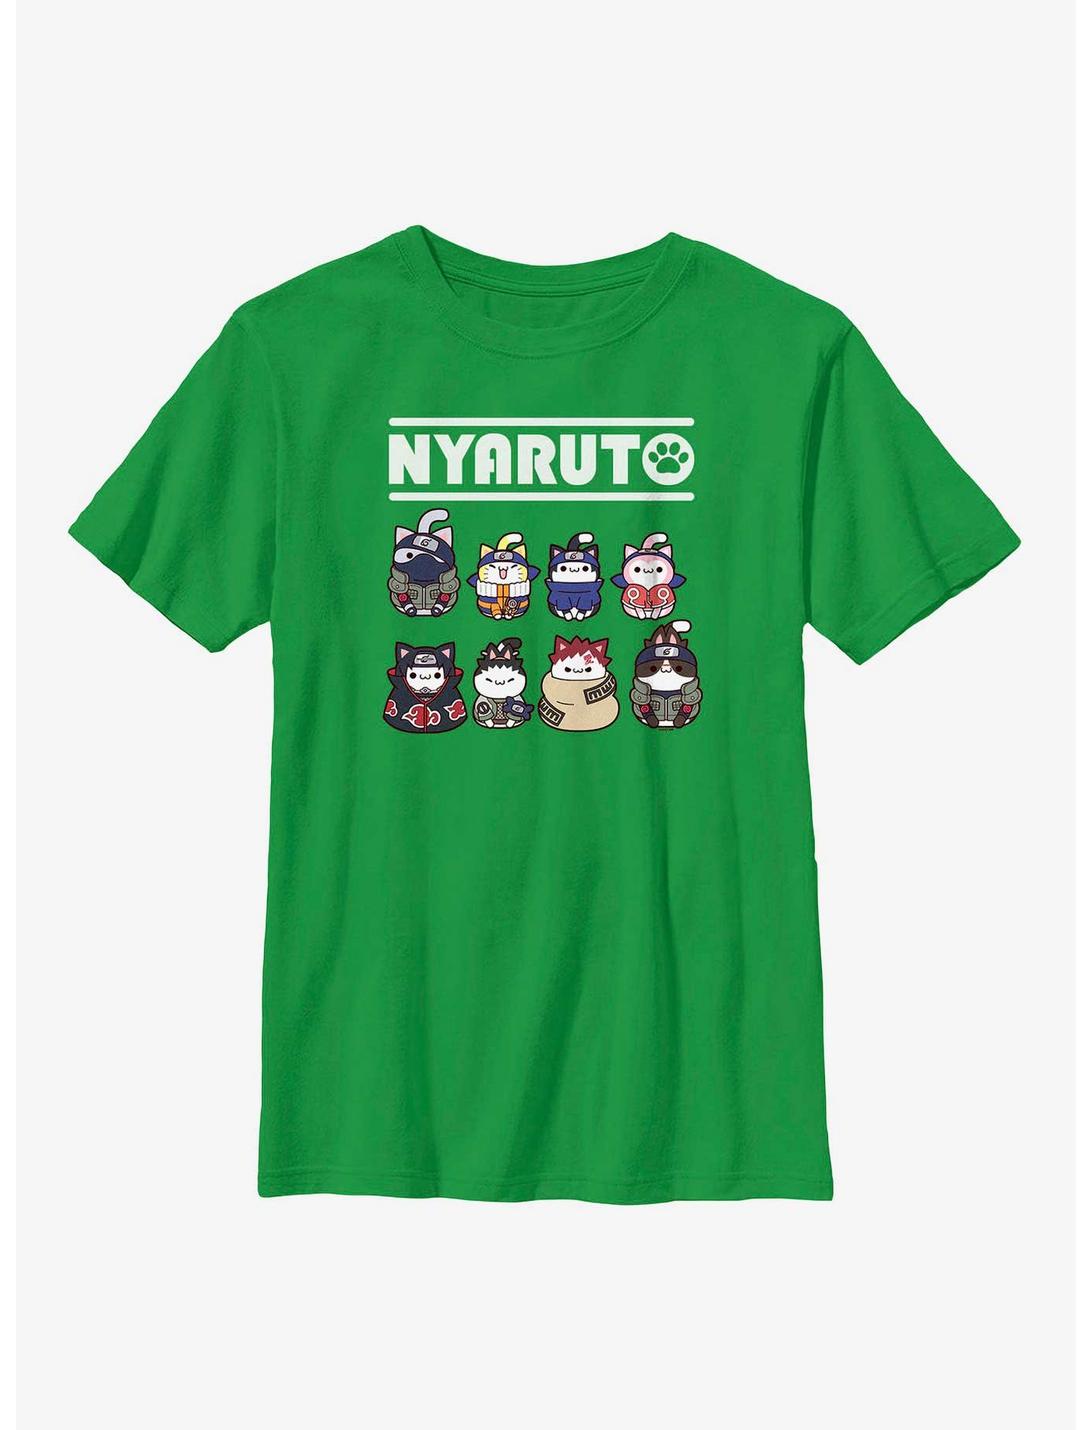 Naruto Nyaruto Cat Lineup Youth T-Shirt, KELLY, hi-res